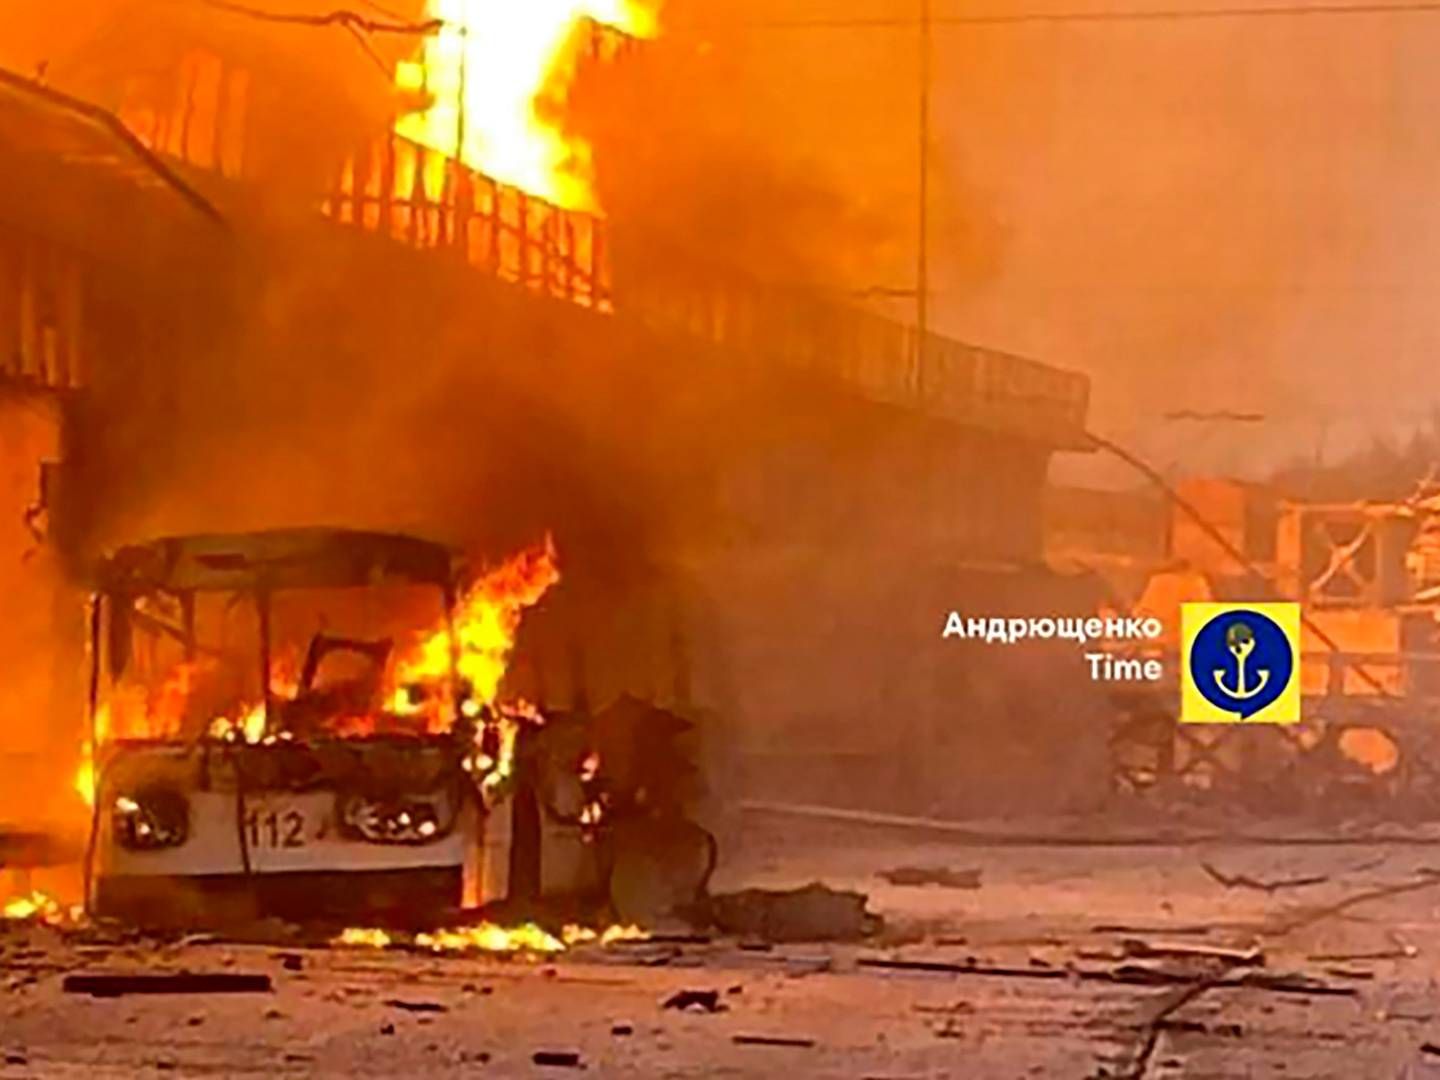 STORT ANGREP: En brennende elektrisk buss i Dnipro, i regionen Dnipropetrovsk, etter Russlands angrep natt til fredag. Bildet er publisert av en rådgiver til bystyret i Mariupol. | Foto: AP / NTB